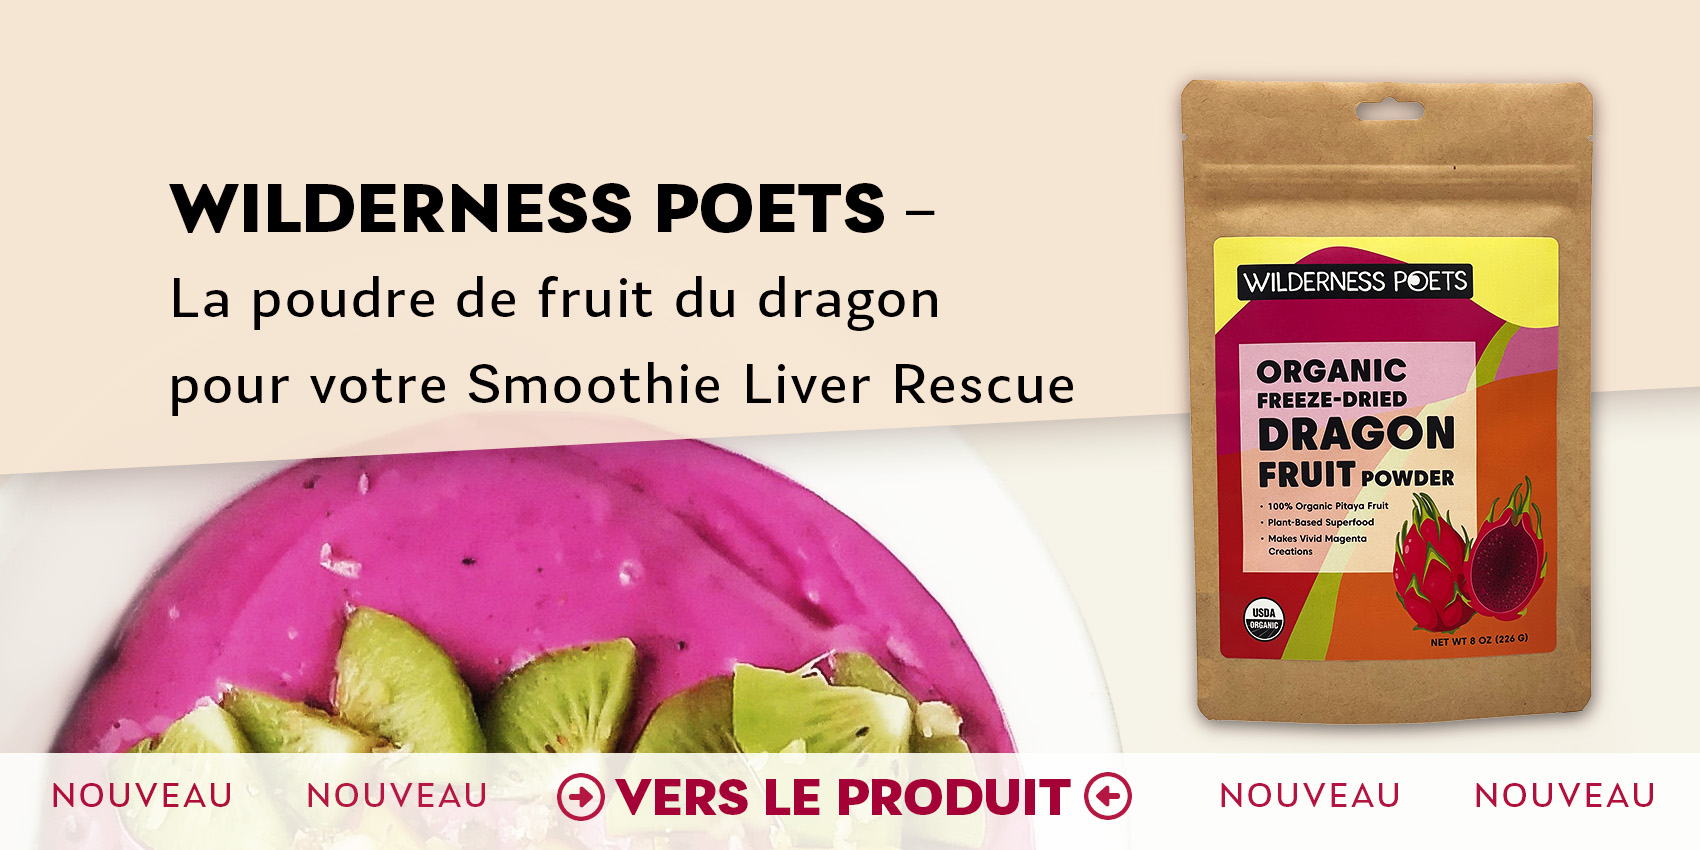 fruit-de-dragon-wilderness-poets